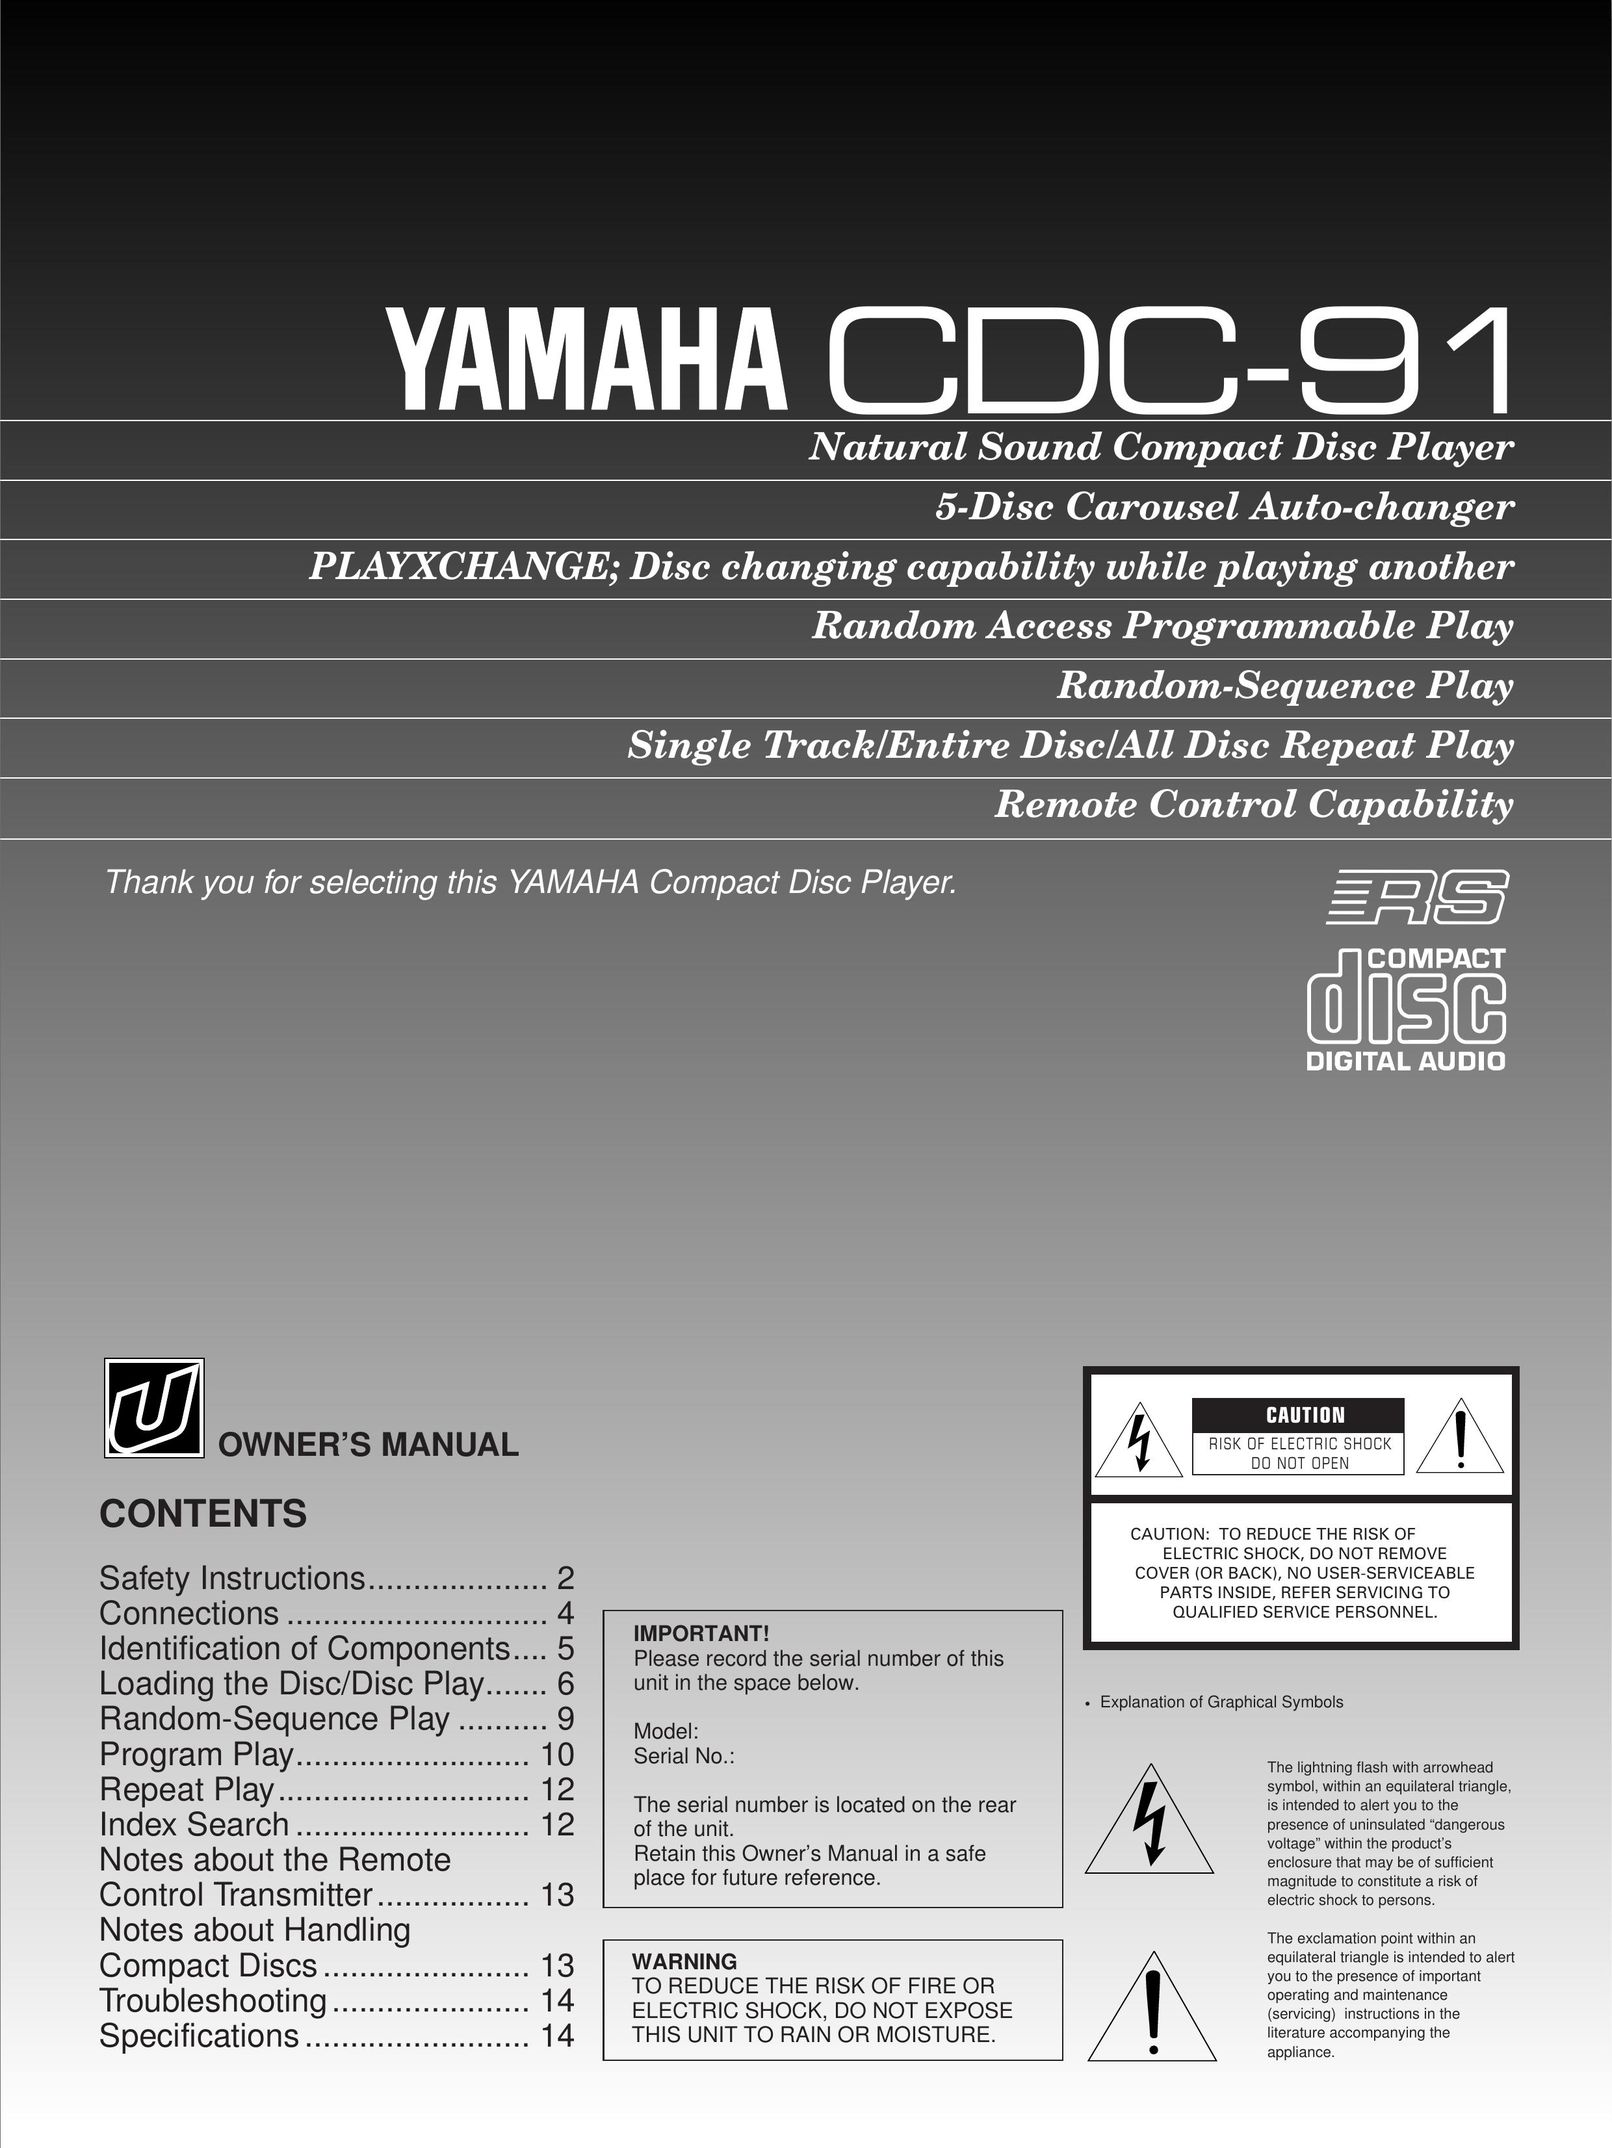 Yamaha CDC-91 CD Player User Manual